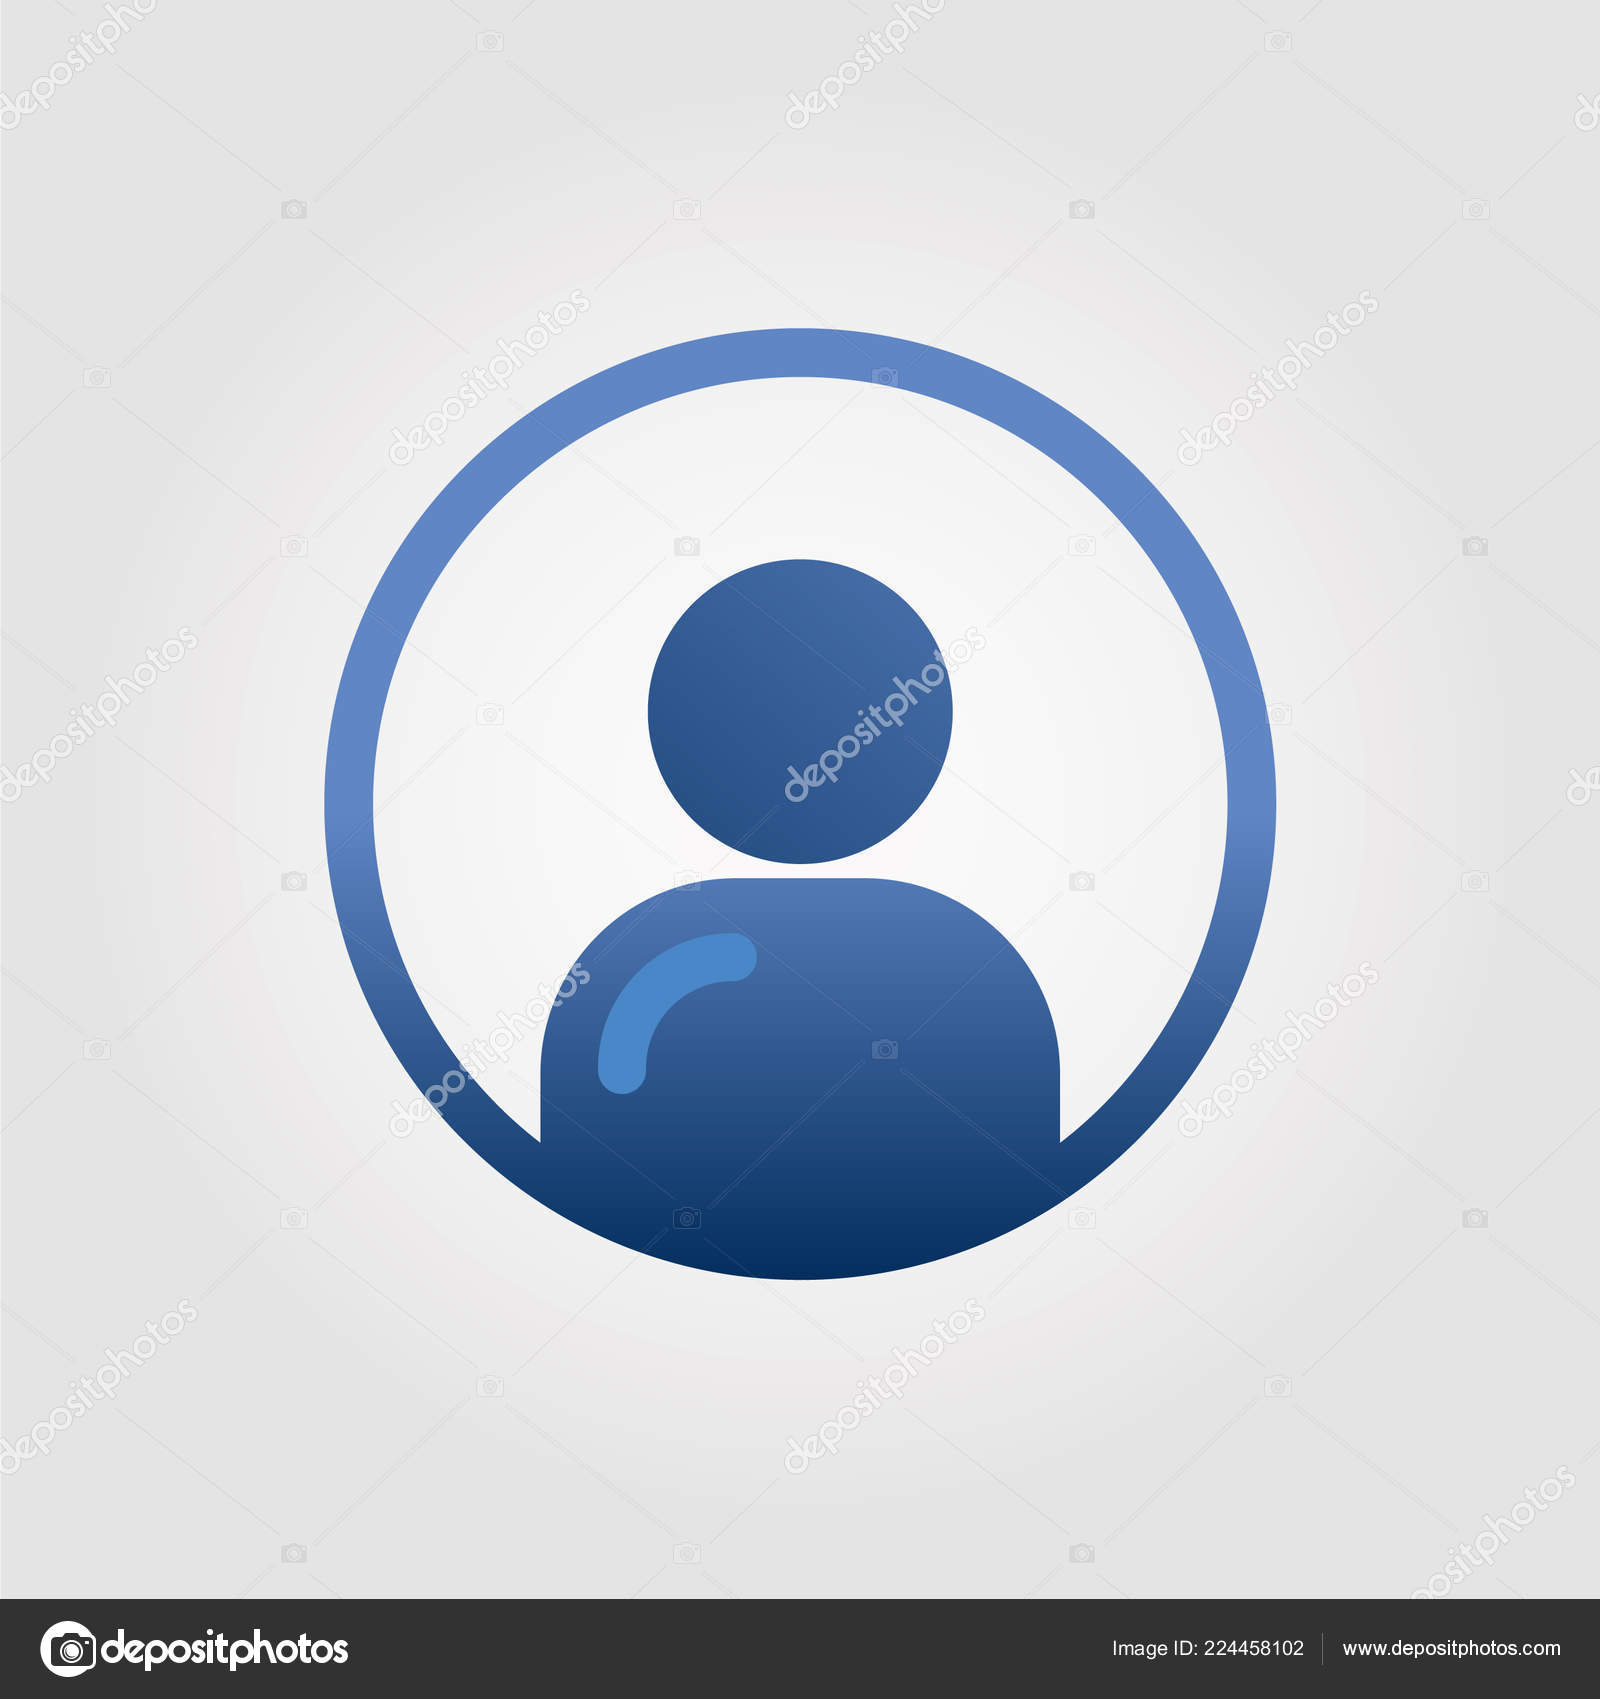 user icon, avatar icon, account icon, profile icon